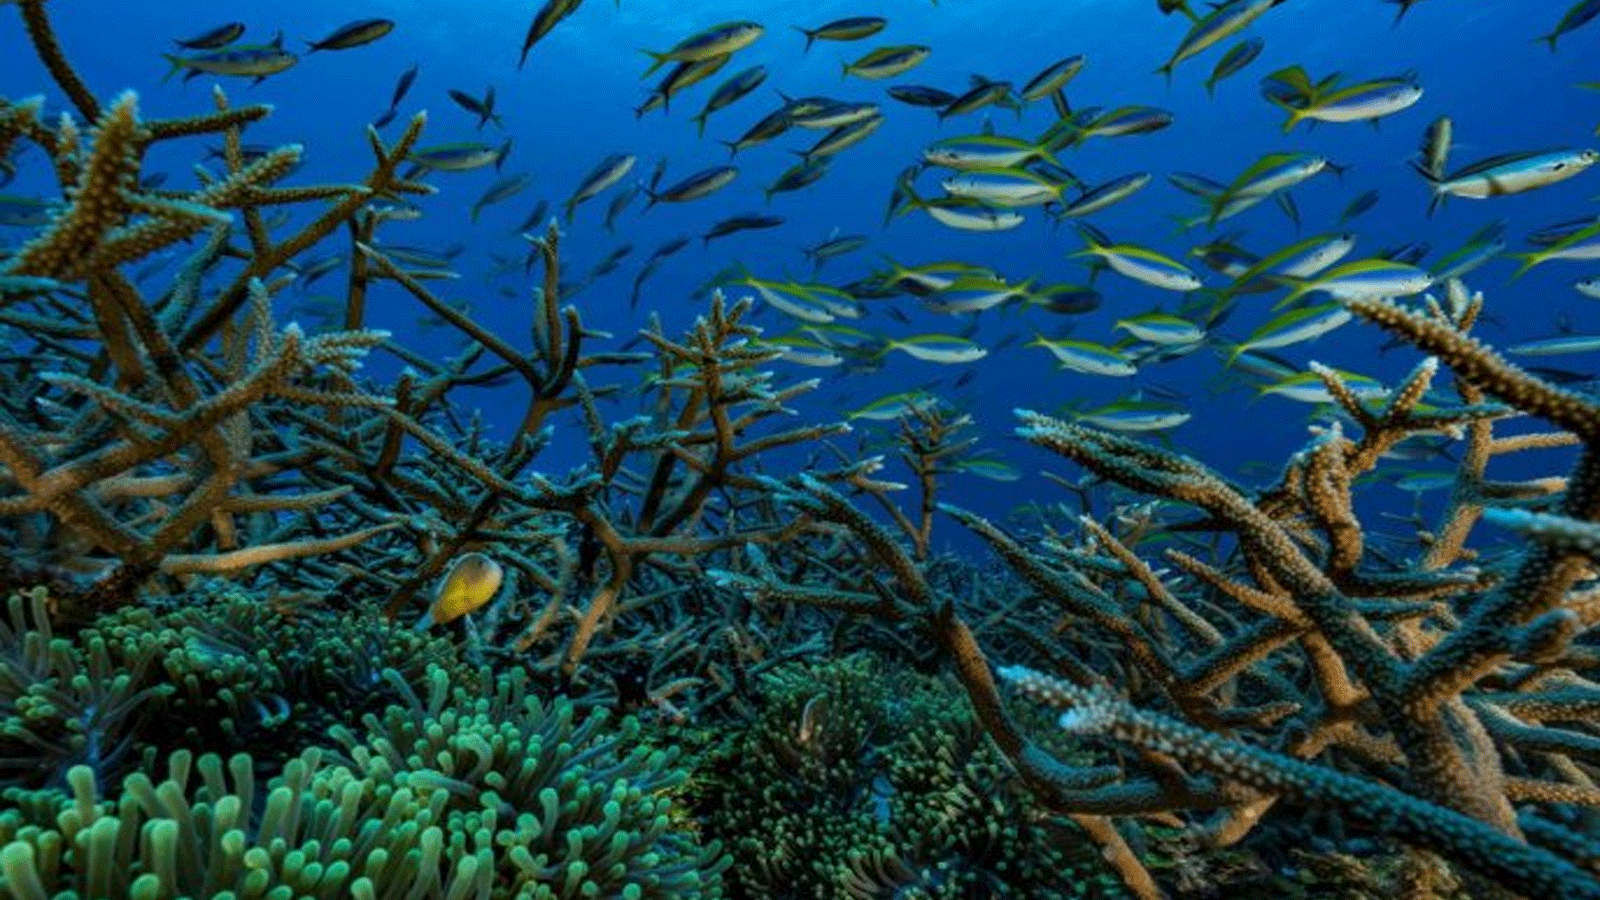 الأسماك الخاصة تسبح بين الشعاب المرجانية قبالة سواحل إقليم مايوت الفرنسي فيما وراء البحار، في أرخبيل جزر القمر في المحيط الهندي